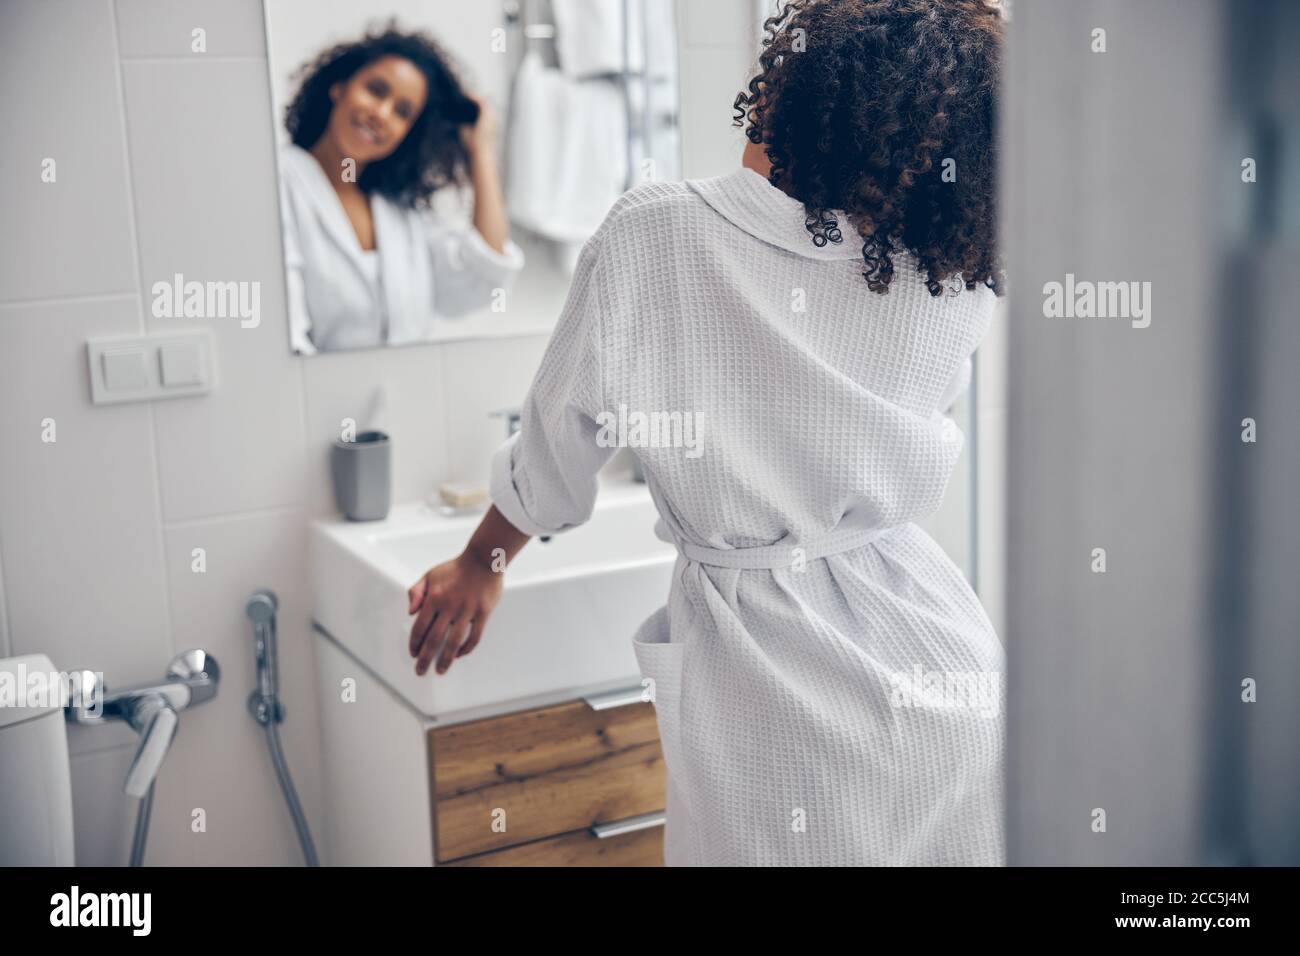 Erfreut Dame berühren ihre Haare vor dem Spiegel Stockfoto